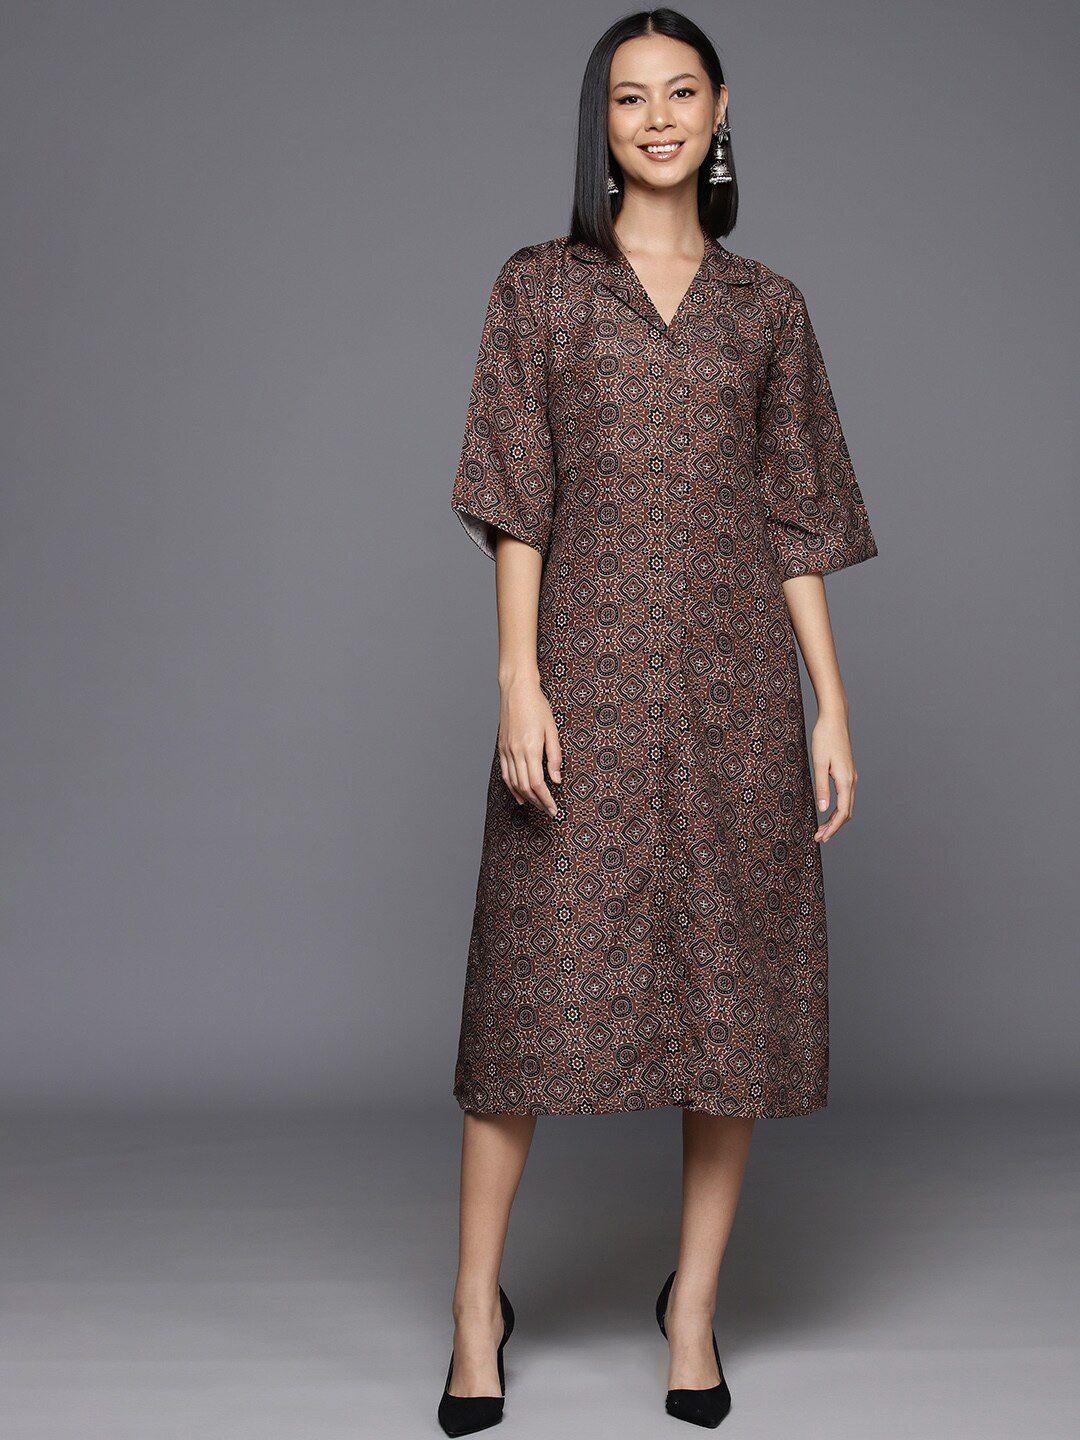 kalini brown & black ethnic motifs print flared sleeve a-line midi dress